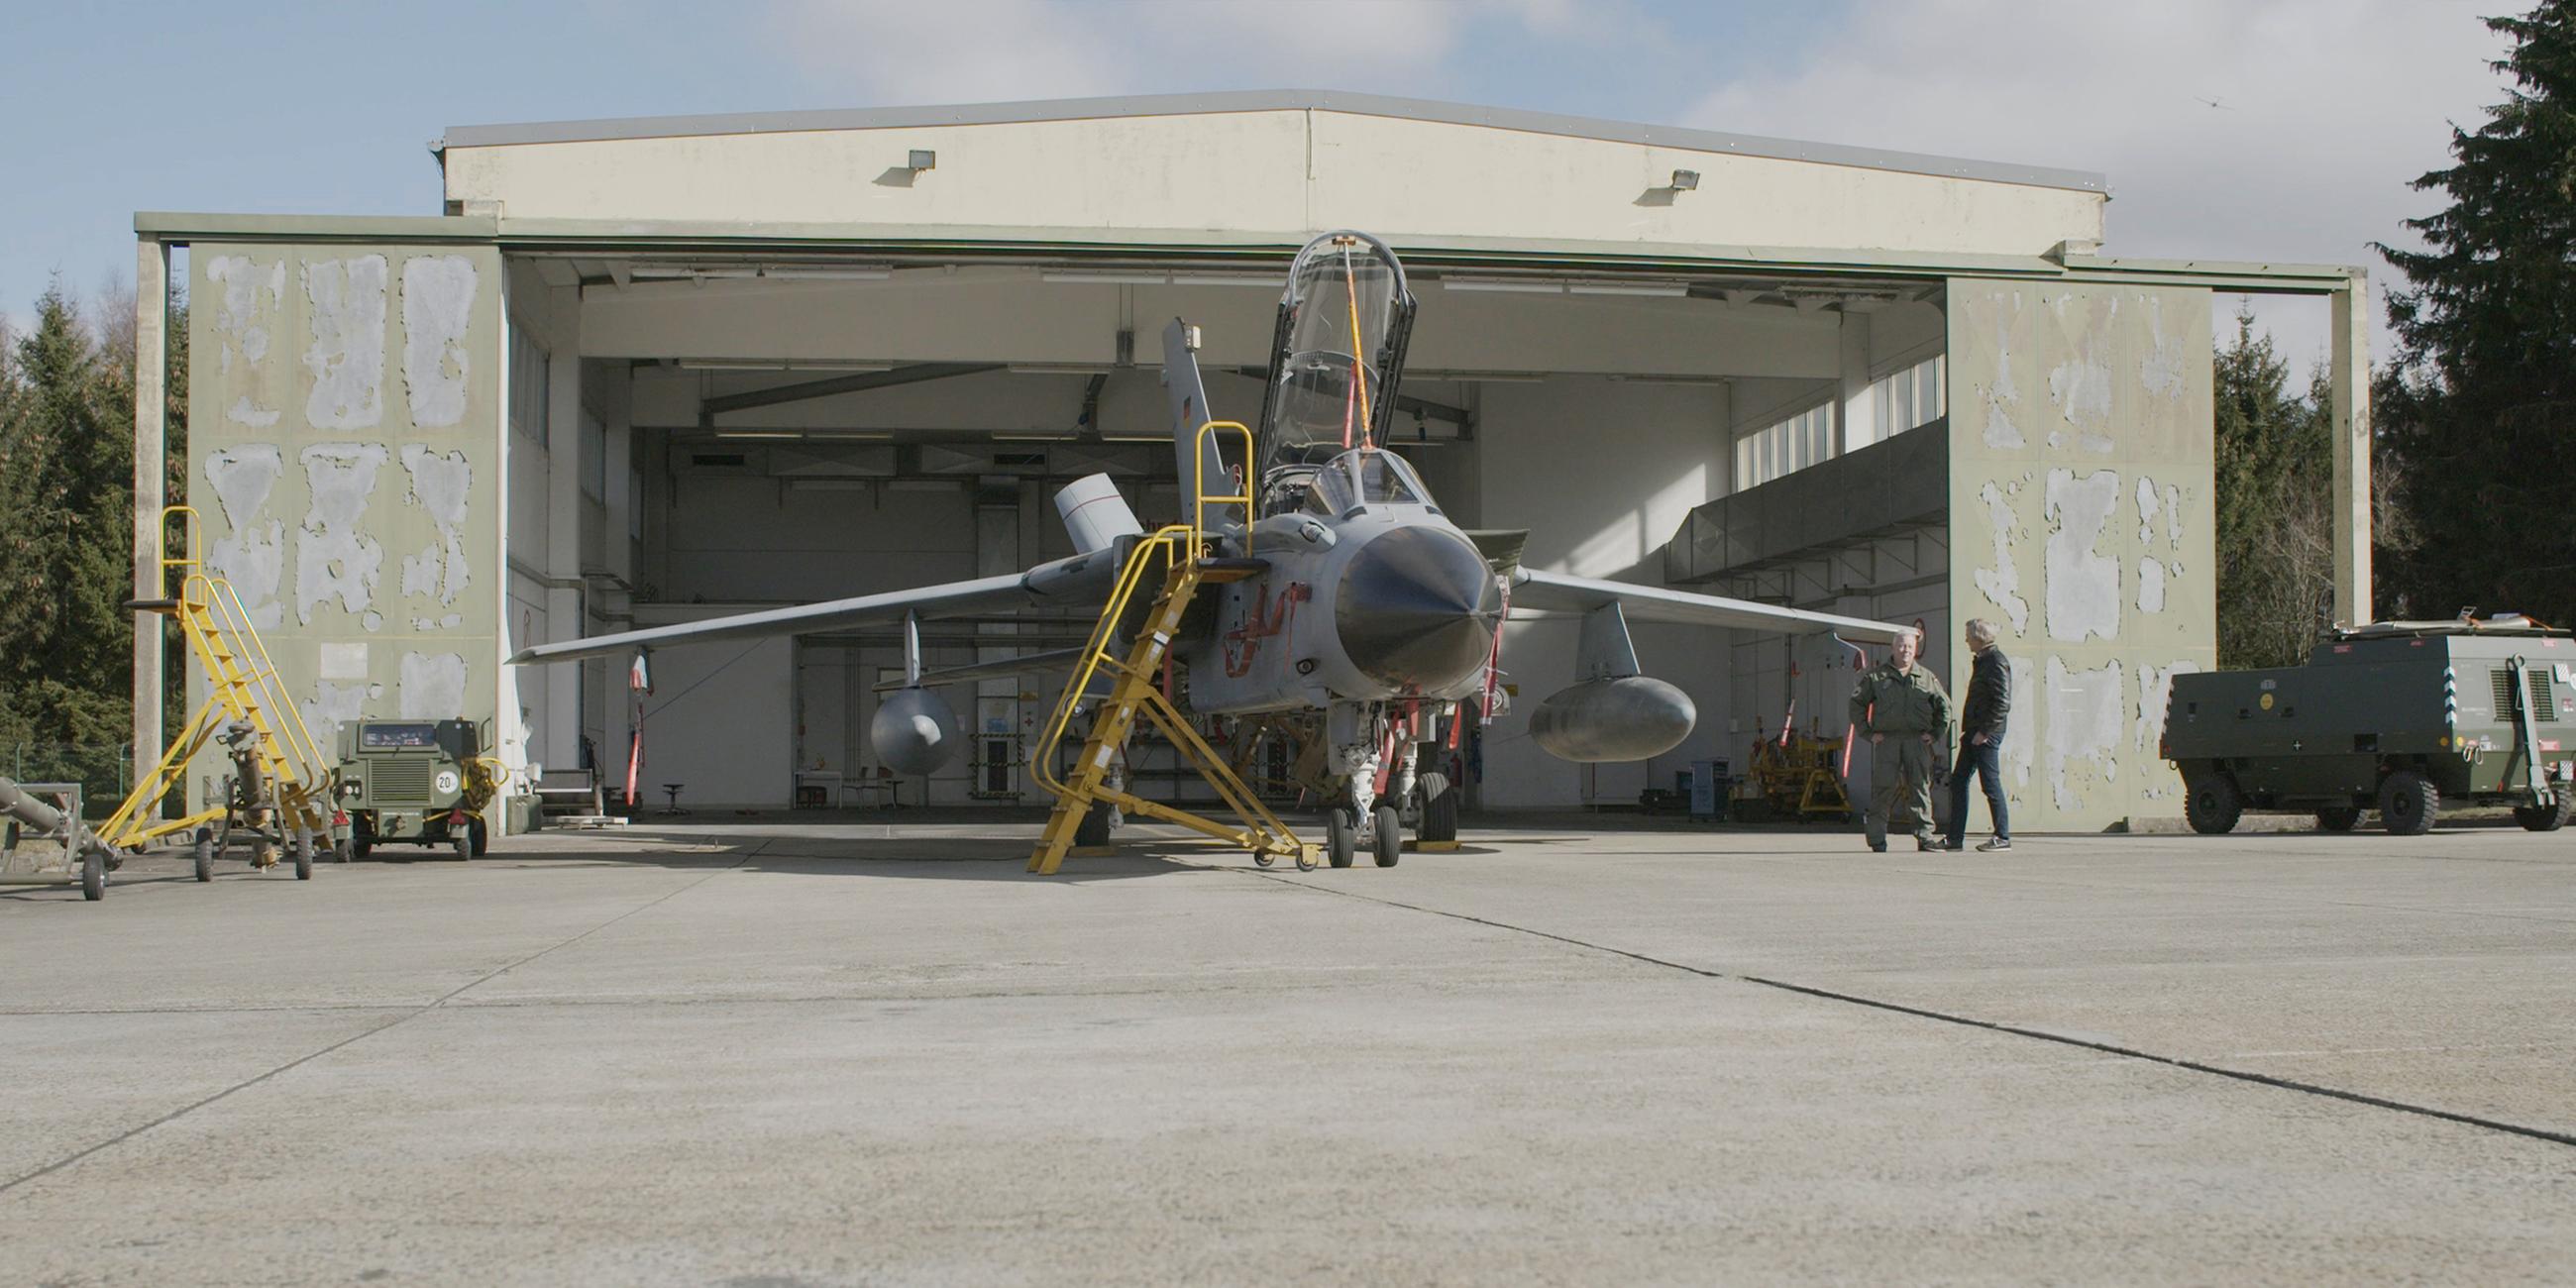 Ein Kampflugzeug steht vor einem Hangar.